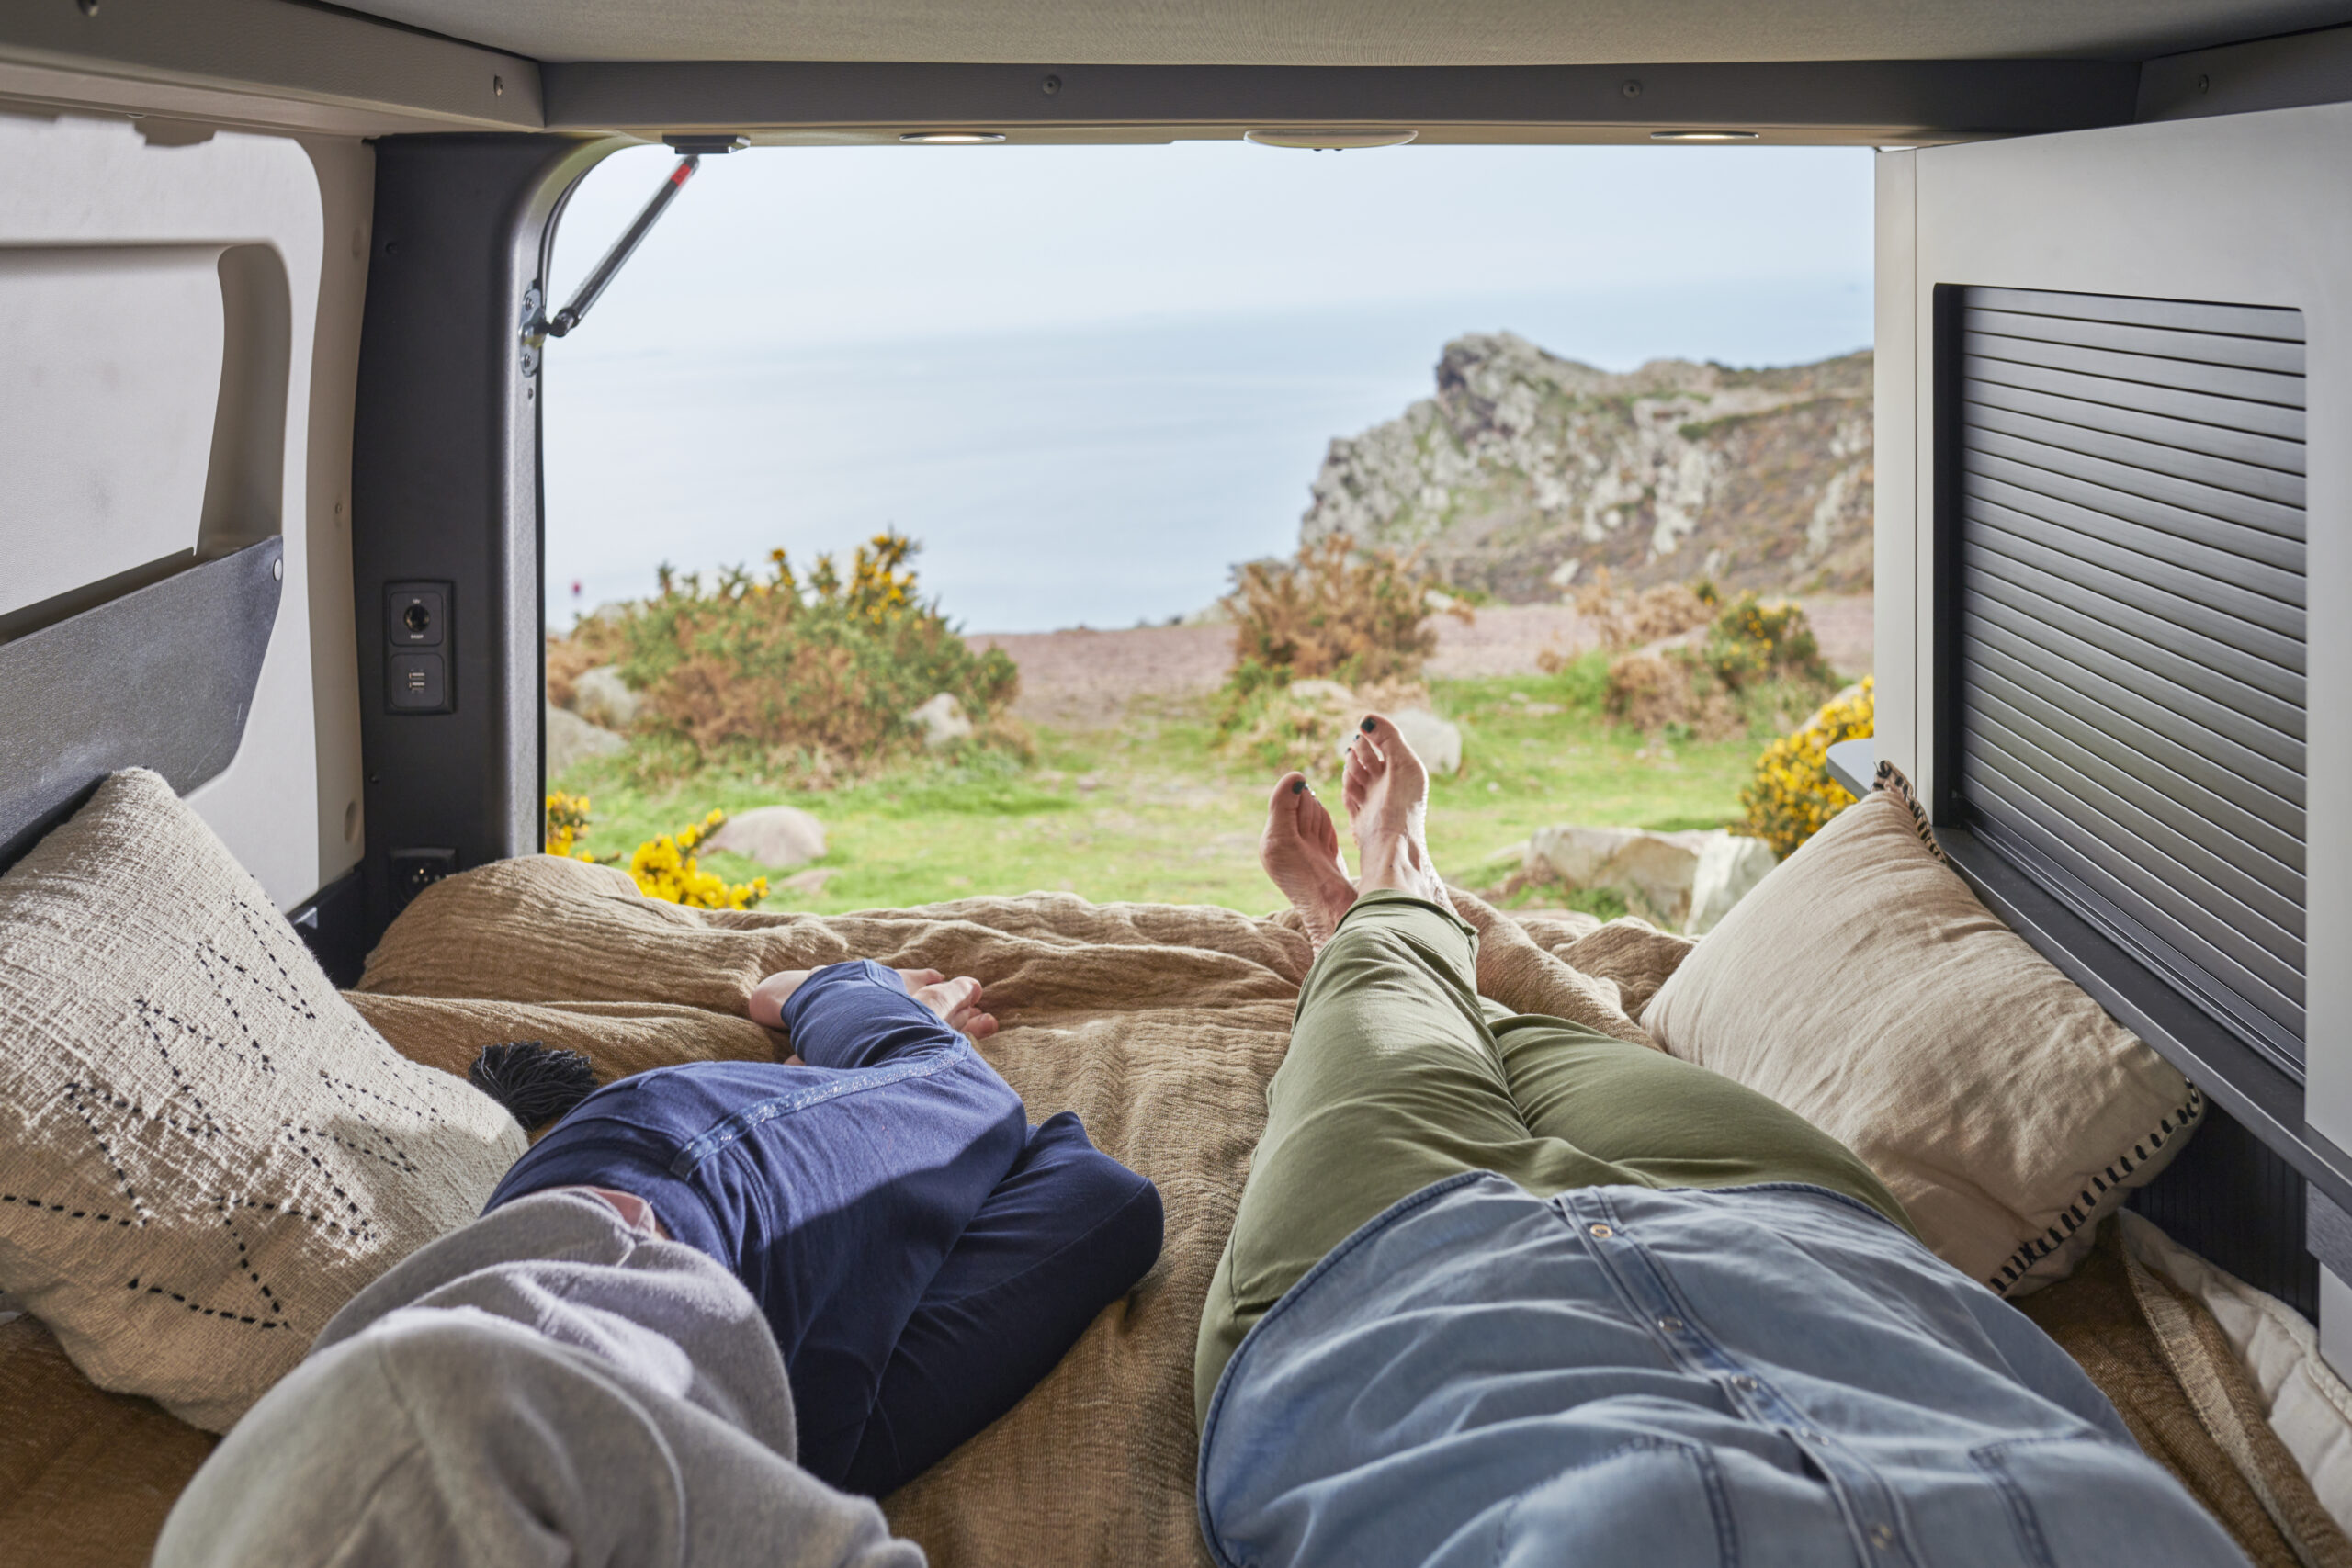 Lire la suite à propos de l’article Où dormir avec un van aménagé ?